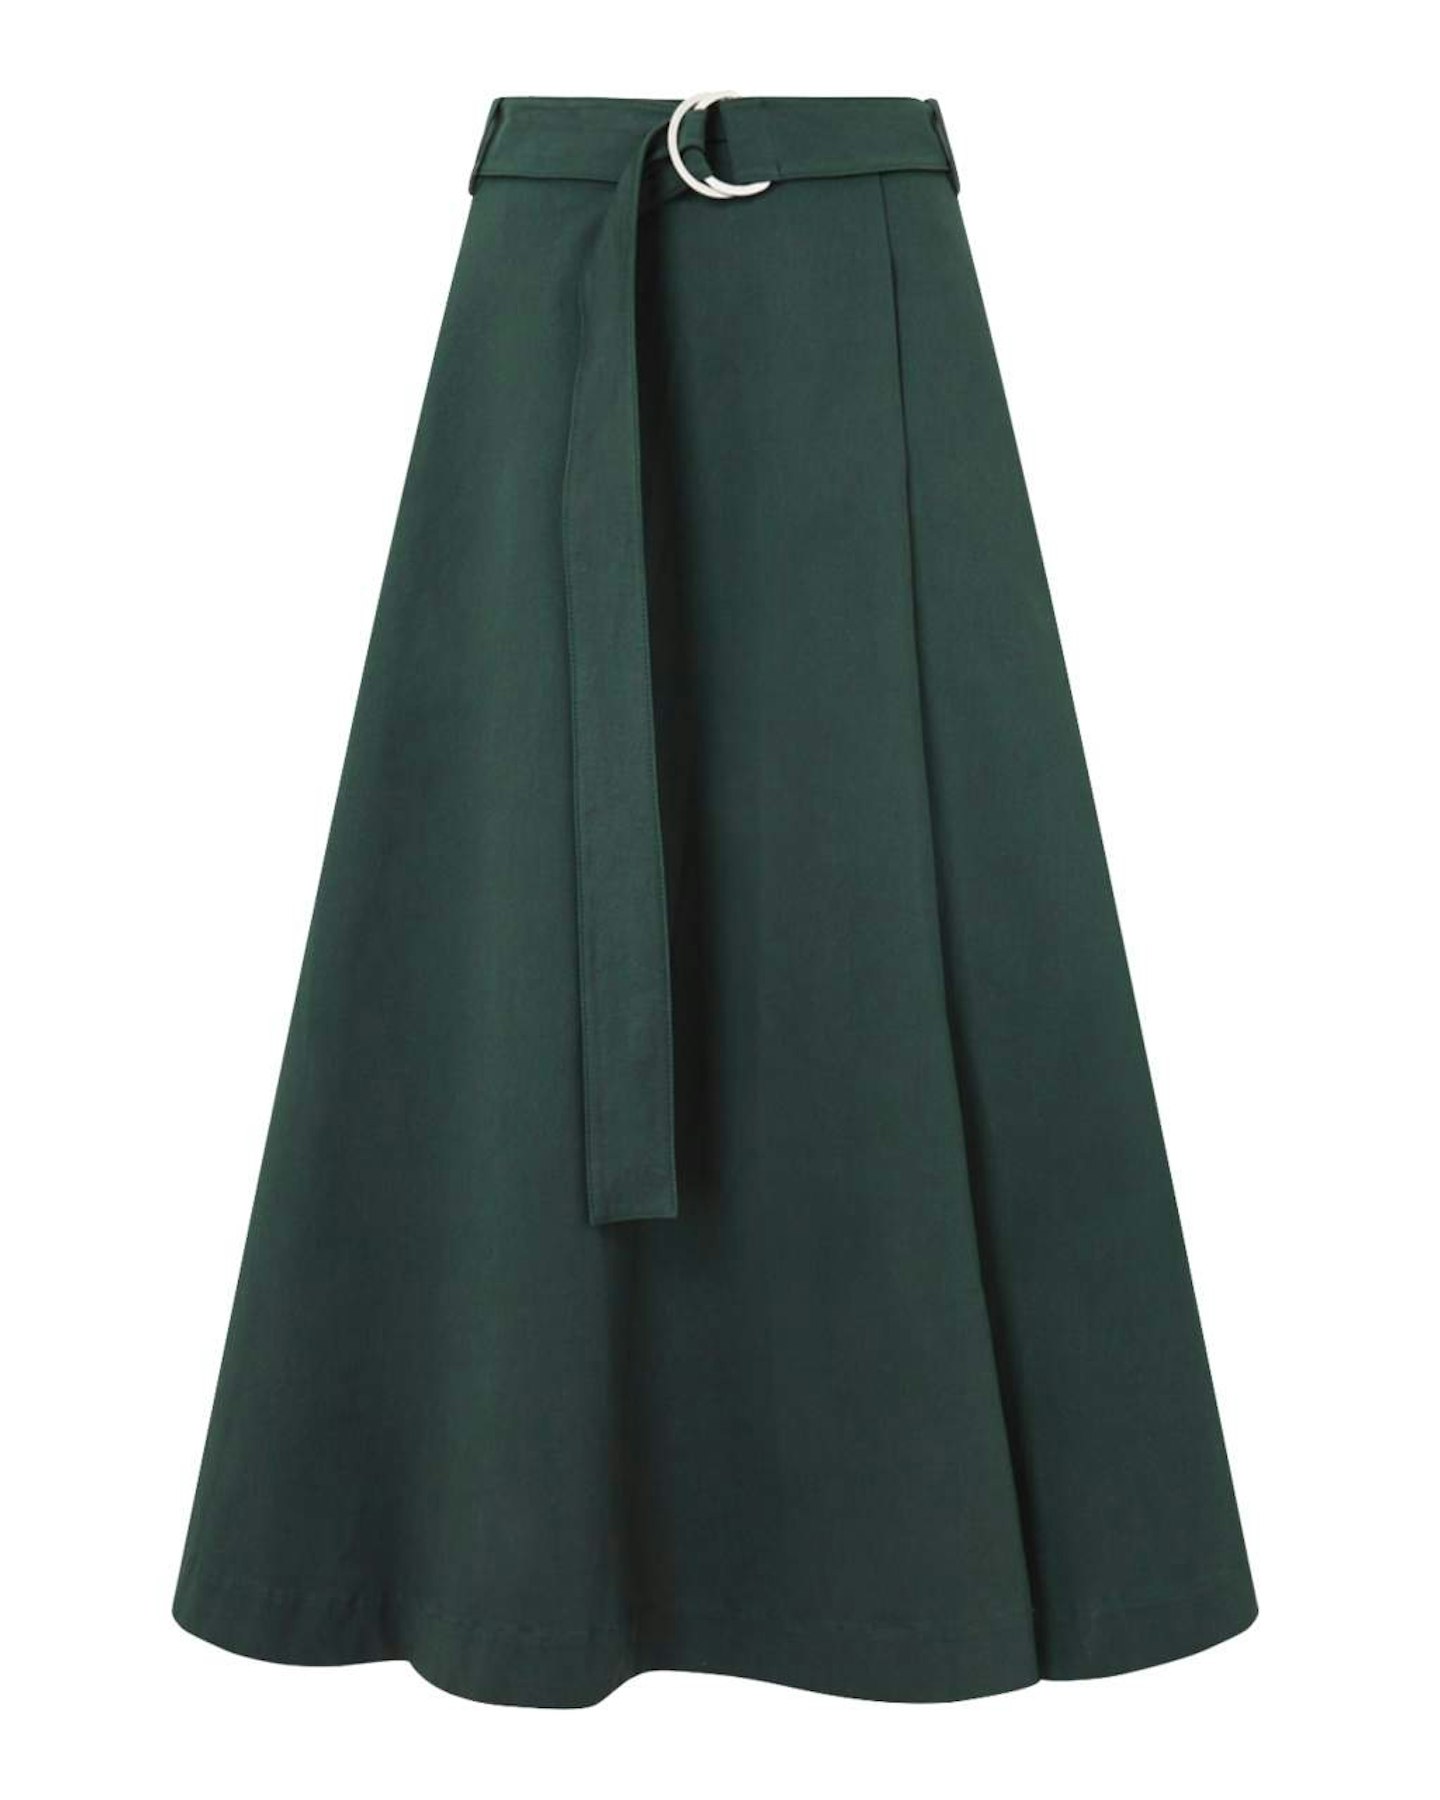 jigsaw-green-a-line-skirt